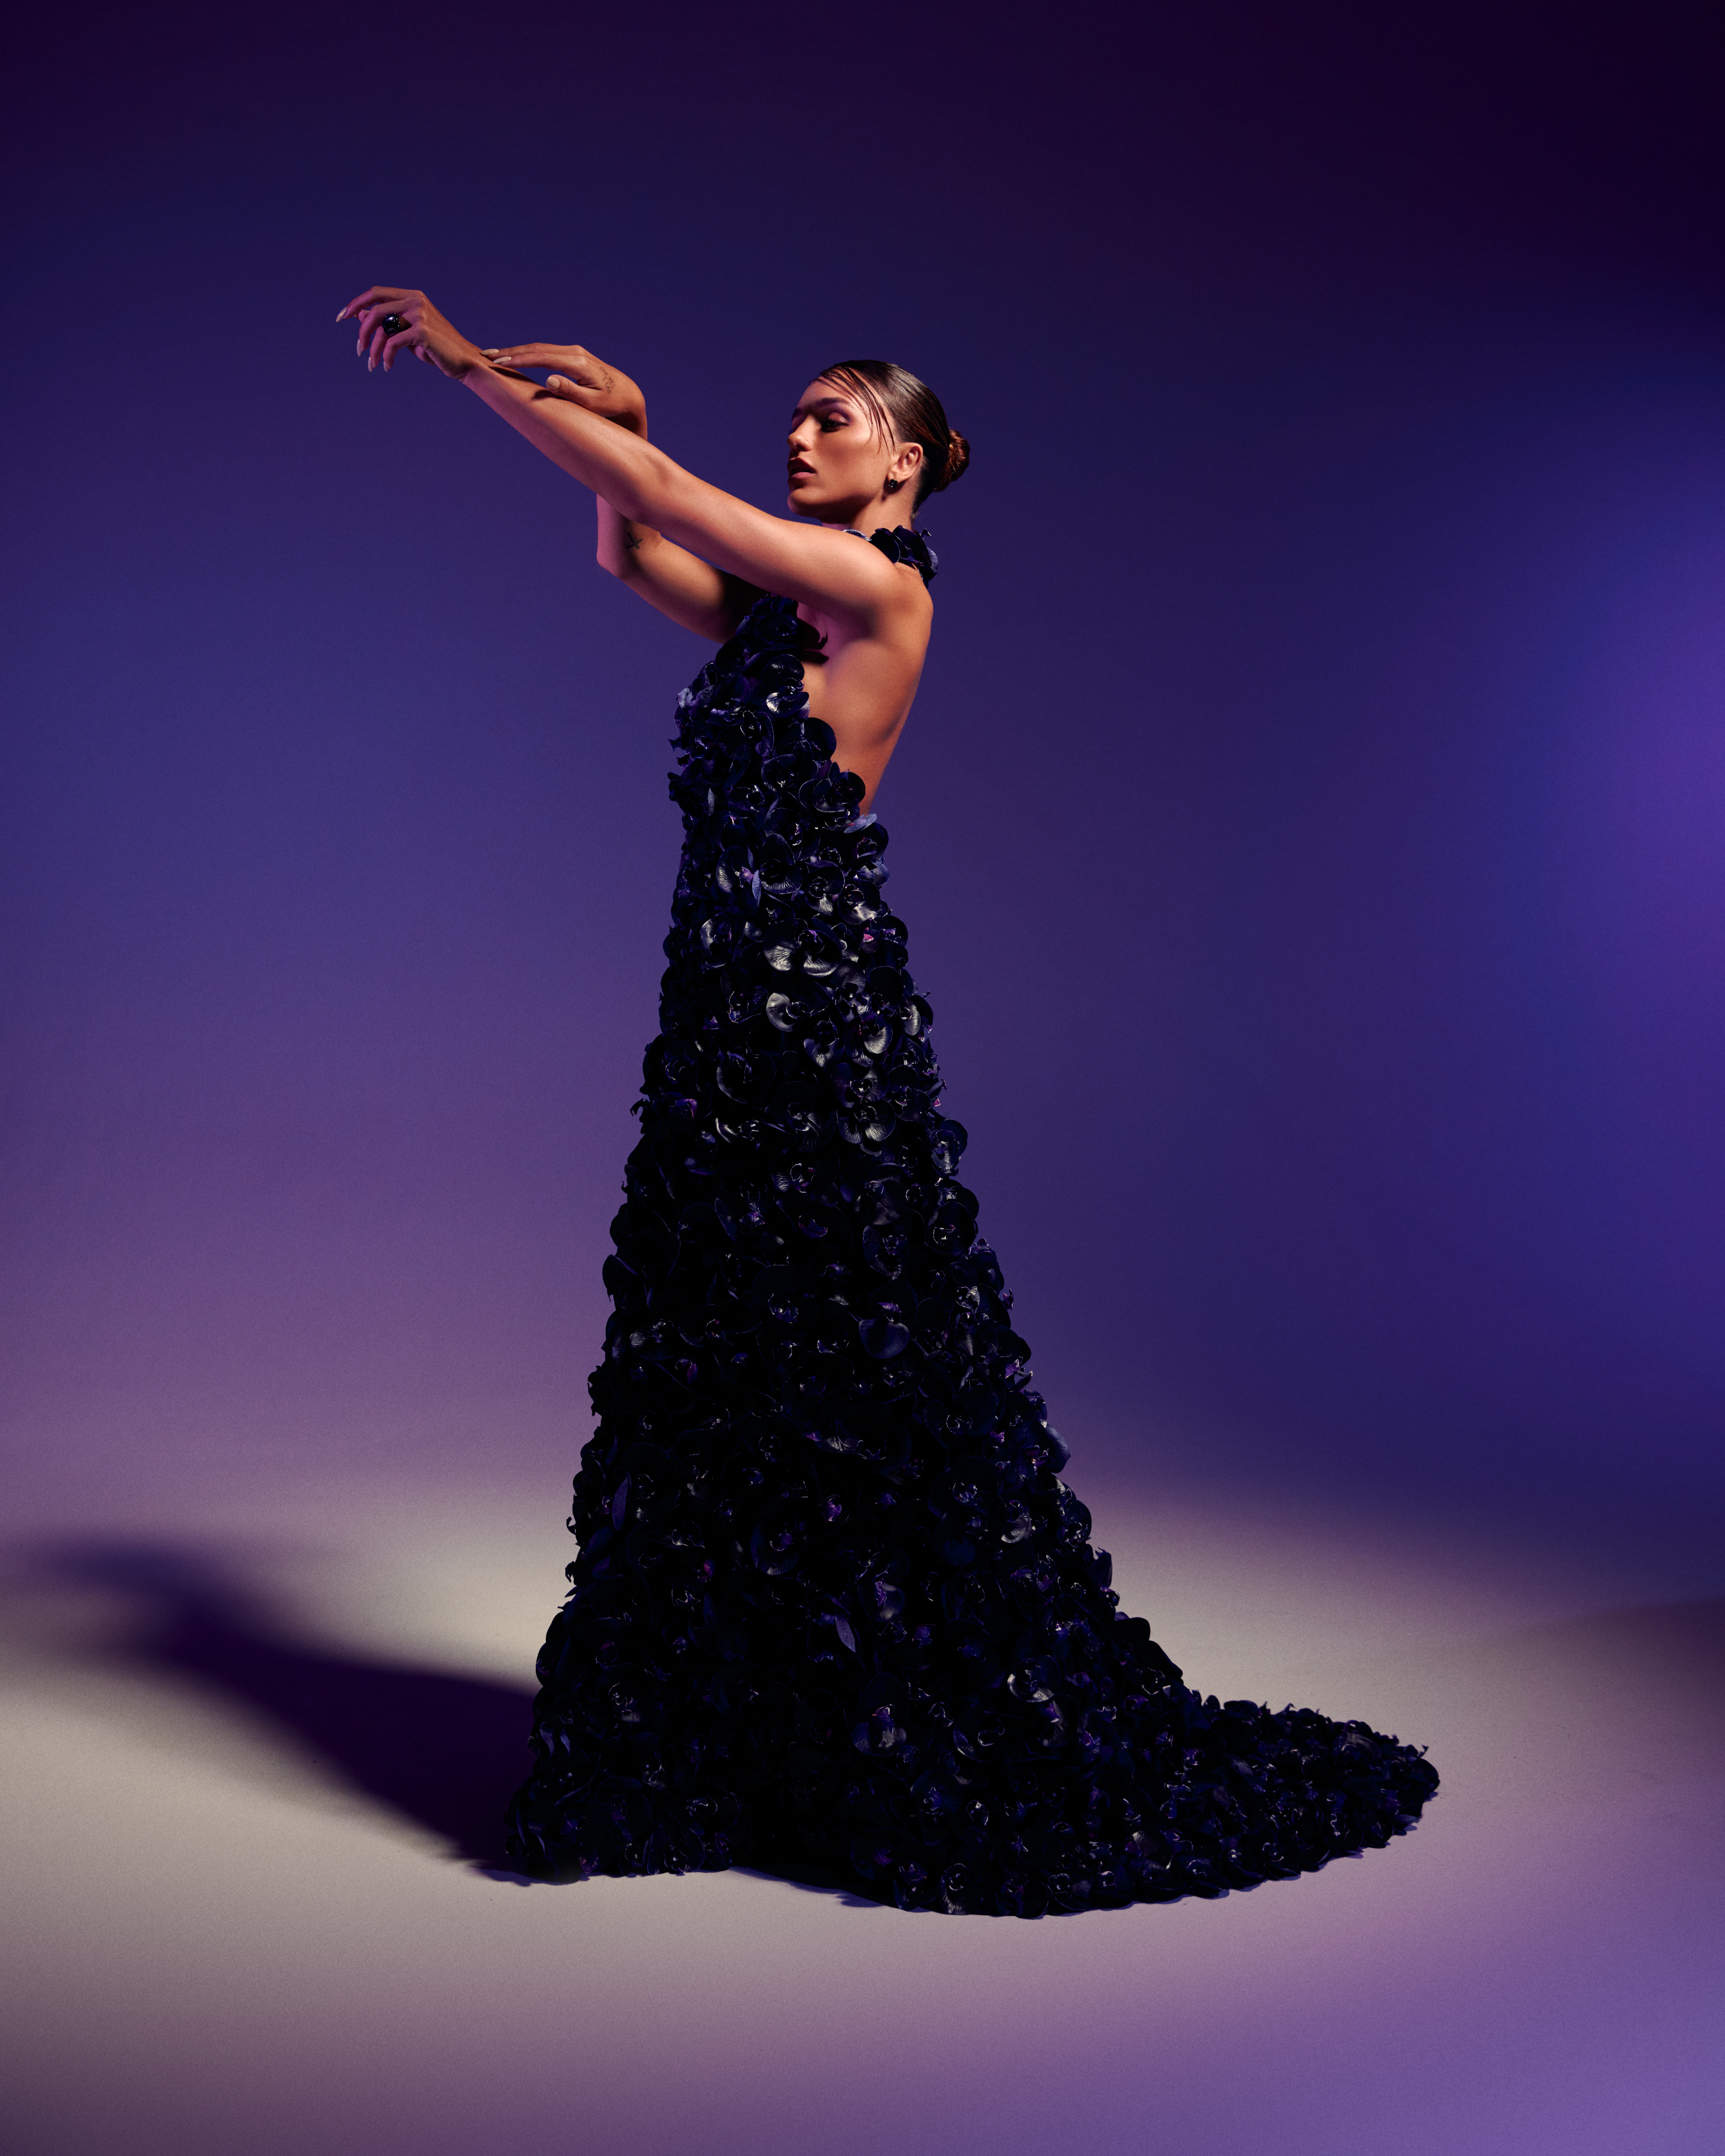 Rafa Kalimann usa vestido exclusivo com mais de 1.600 orquídeas negras em 3D em ensaio fotográfico - Rafa Kalimann usa vestido exclusivo com mais de 1.600 orquídeas negras em 3D em ensaio fotográfico 